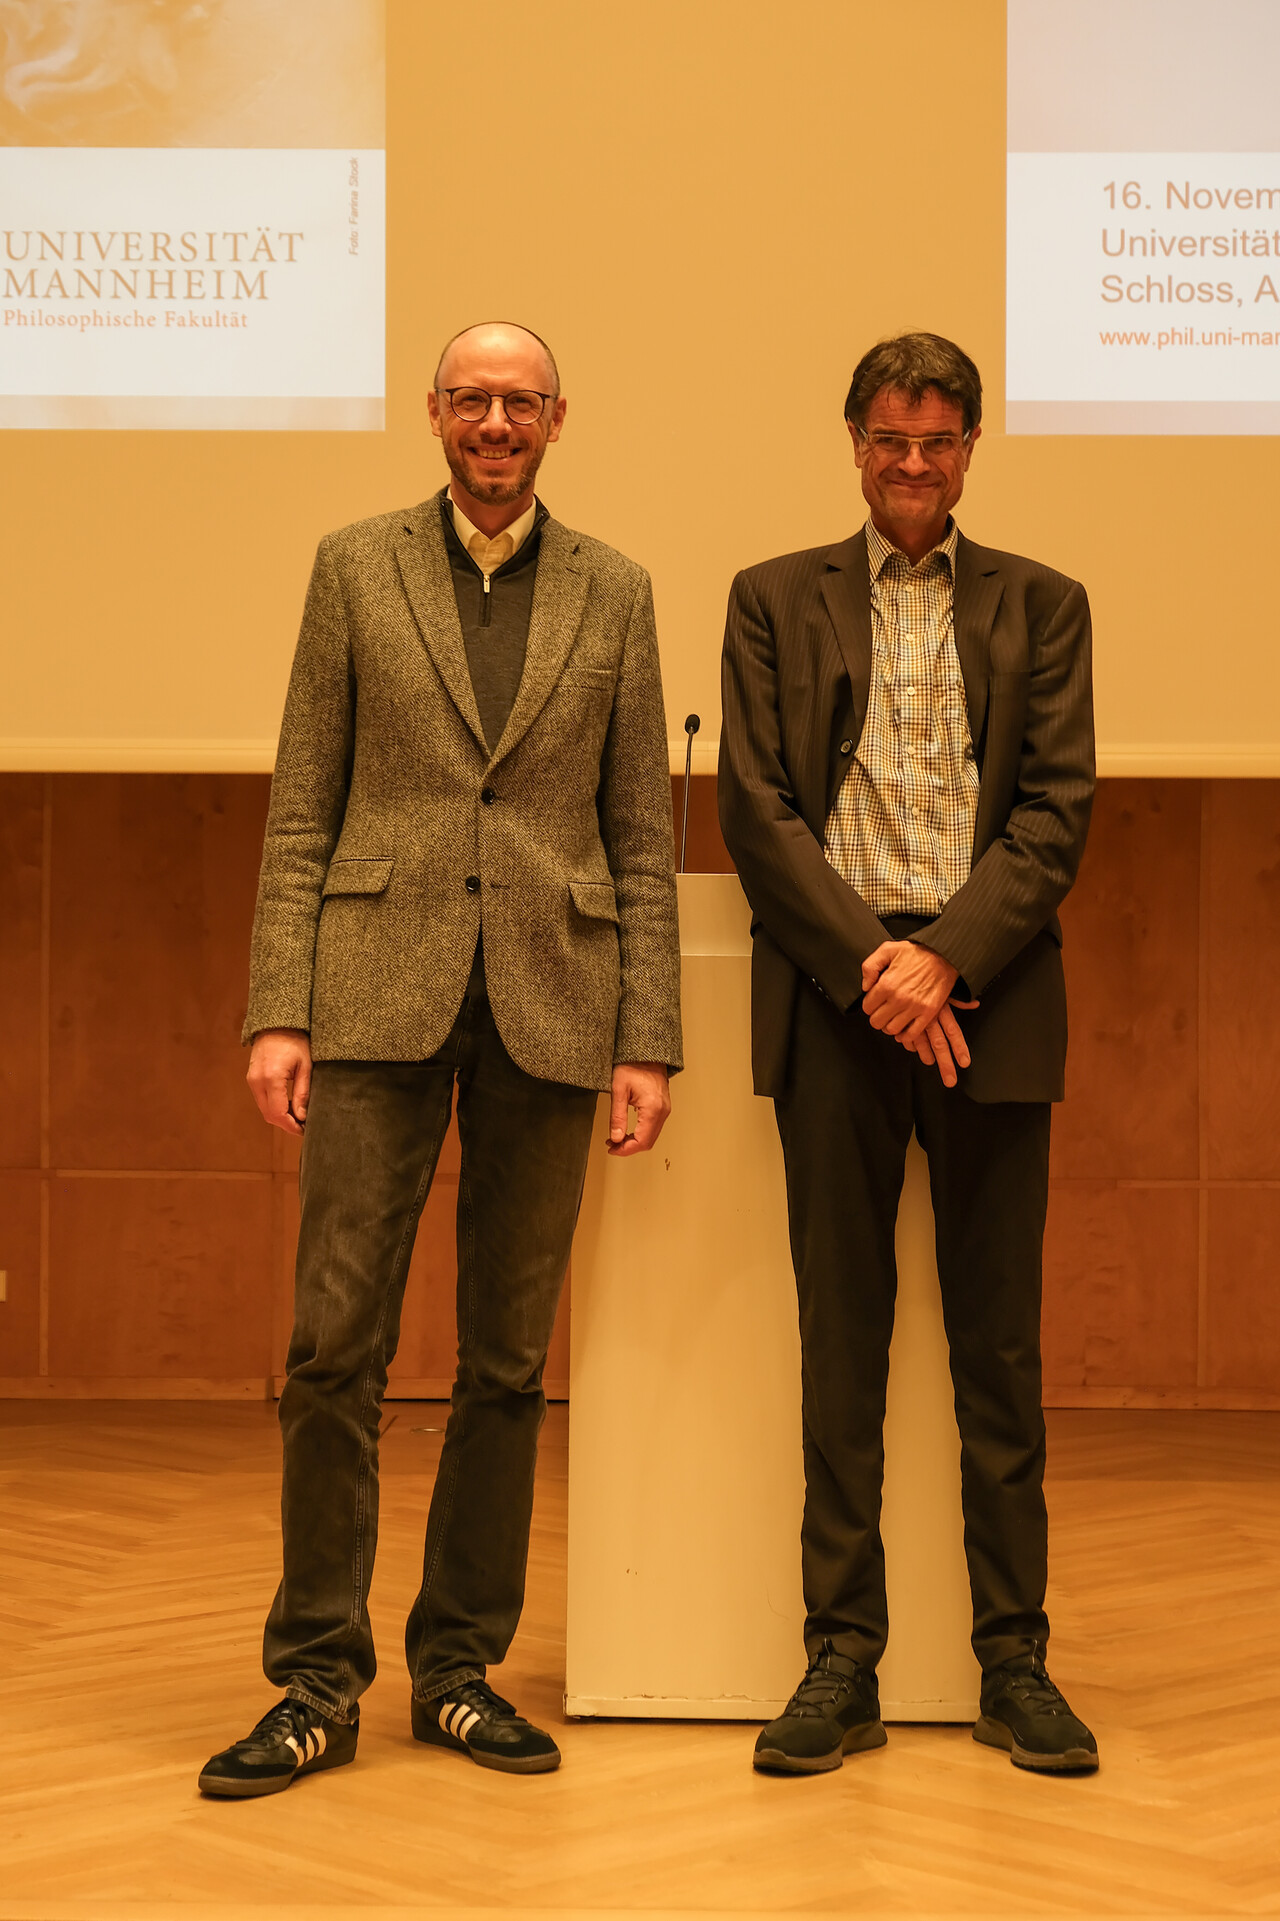 Prof. Dr. Gerhard Ernst und Prof. Dr. Bernward Gesang auf der Bühne vor dem Rednerpult